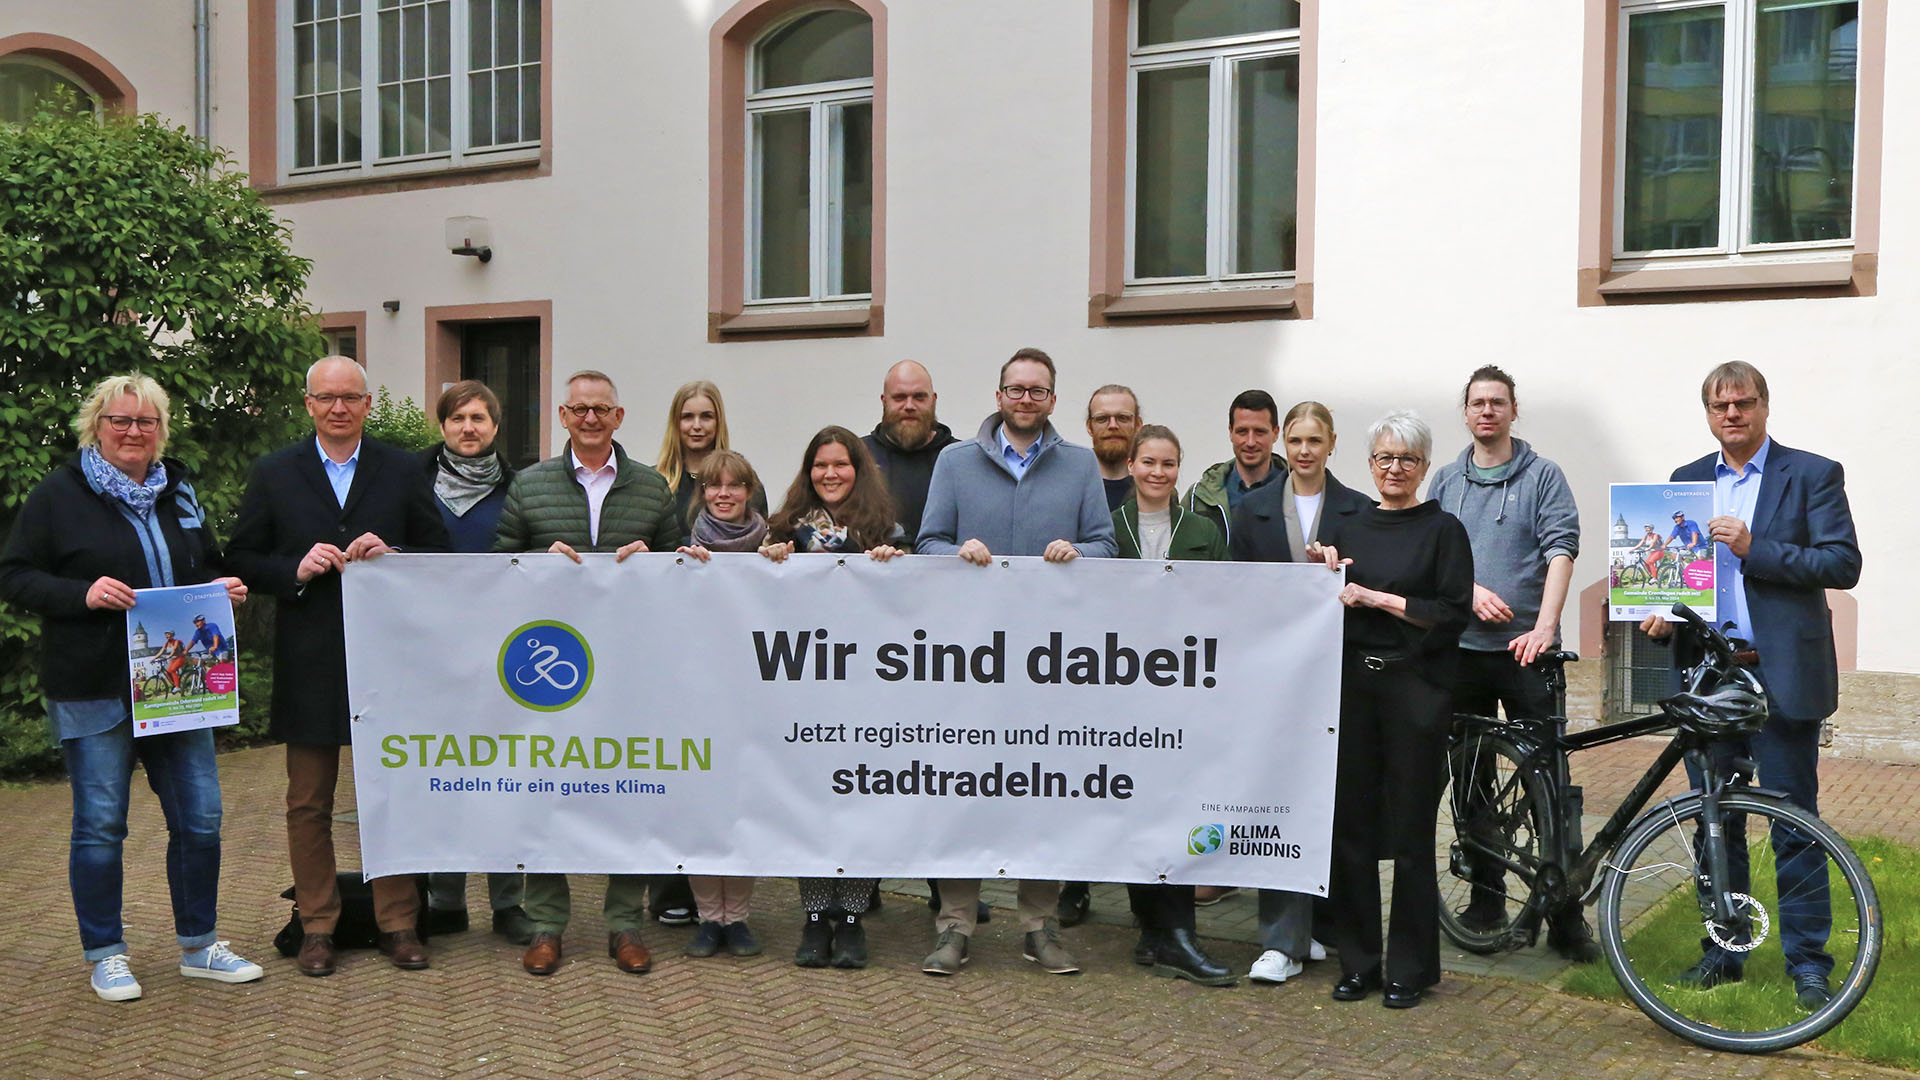 Zum zweiten Mal nehmen alle Gebietskrperschaften des Landkreises Wolfenbttel gemeinsam am STADTRADELN teil. Die Stadt Wolfenbttel hatte bereits vor zehn Jahren das erste Mal teilgenommen und feiert in diesem Jahr somit ein kleines Jubilum. 